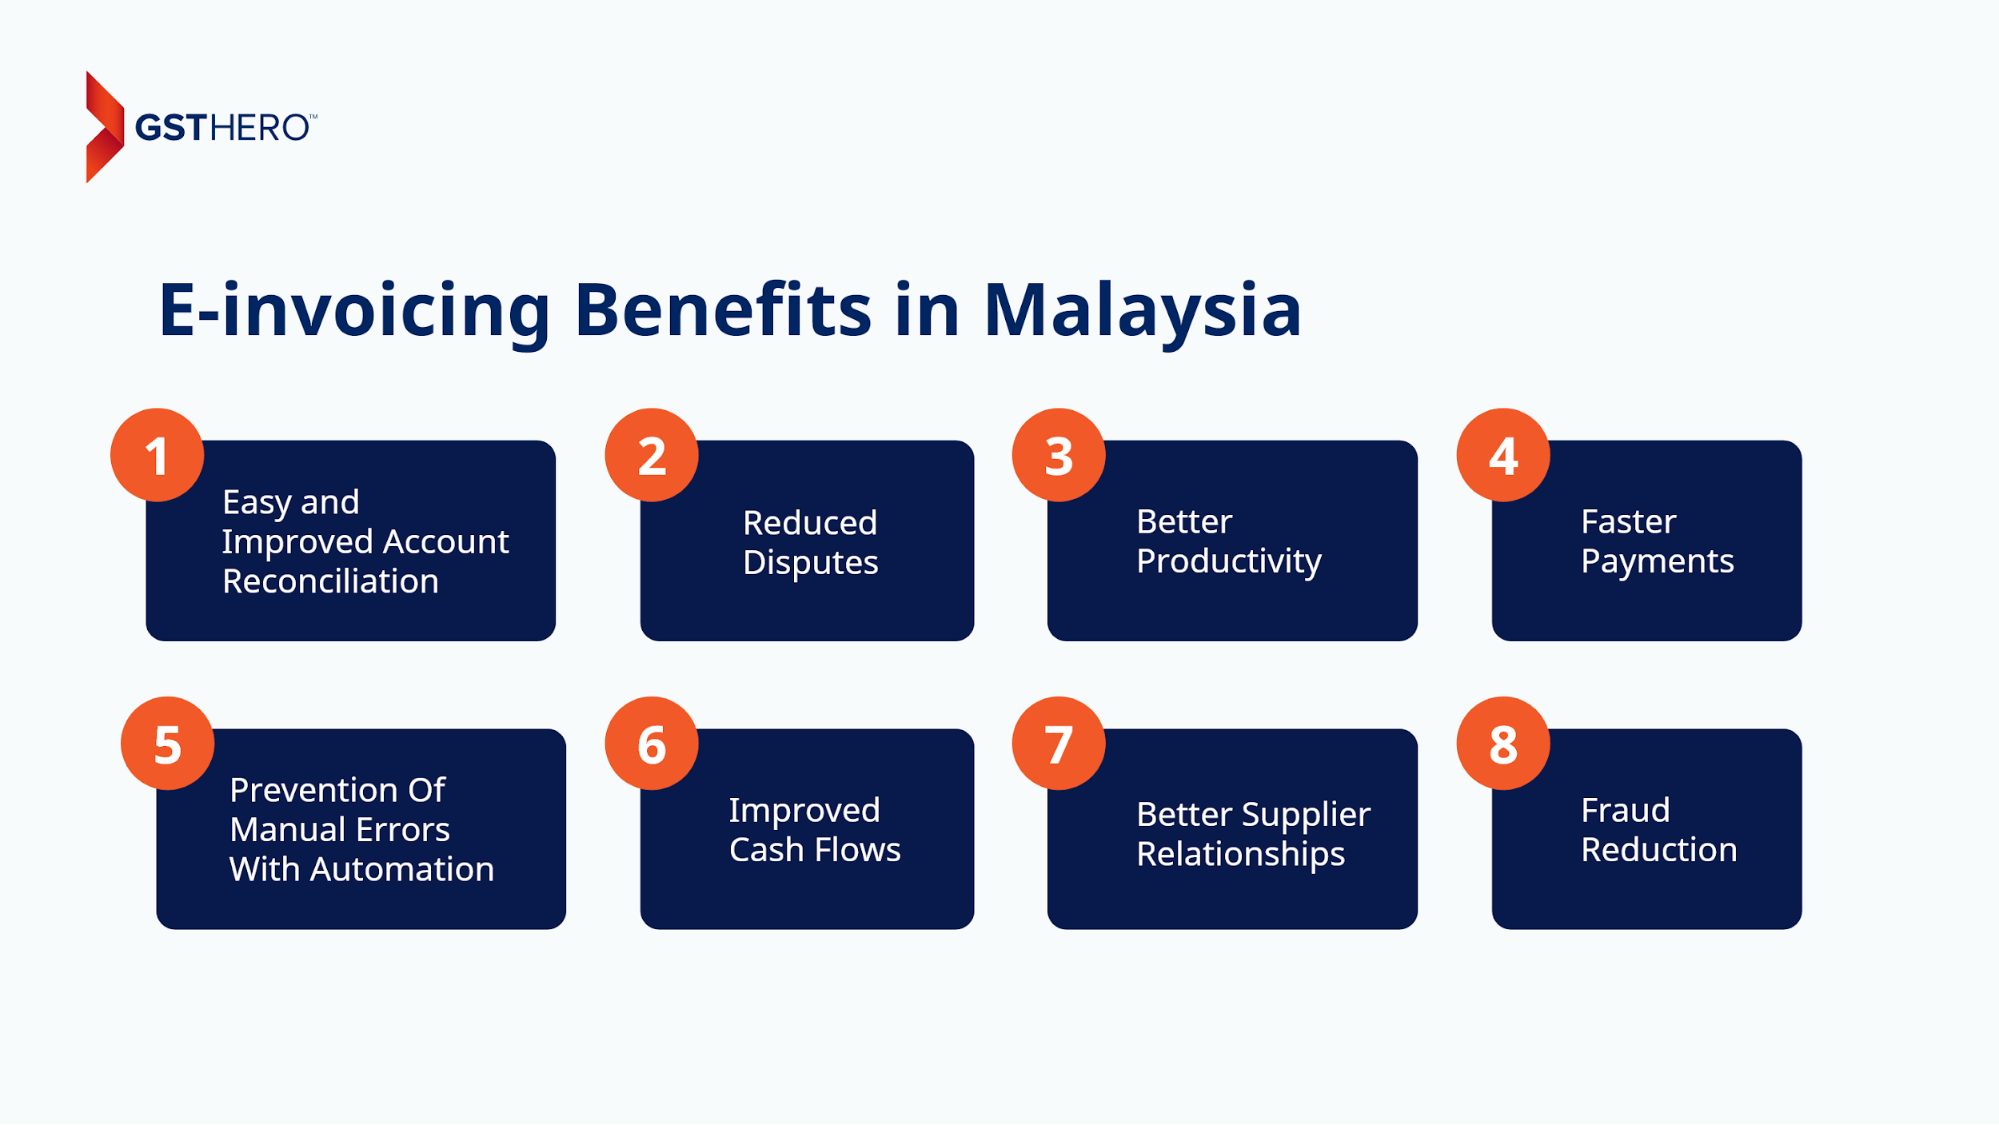 e-invoicing in Malaysia benefits